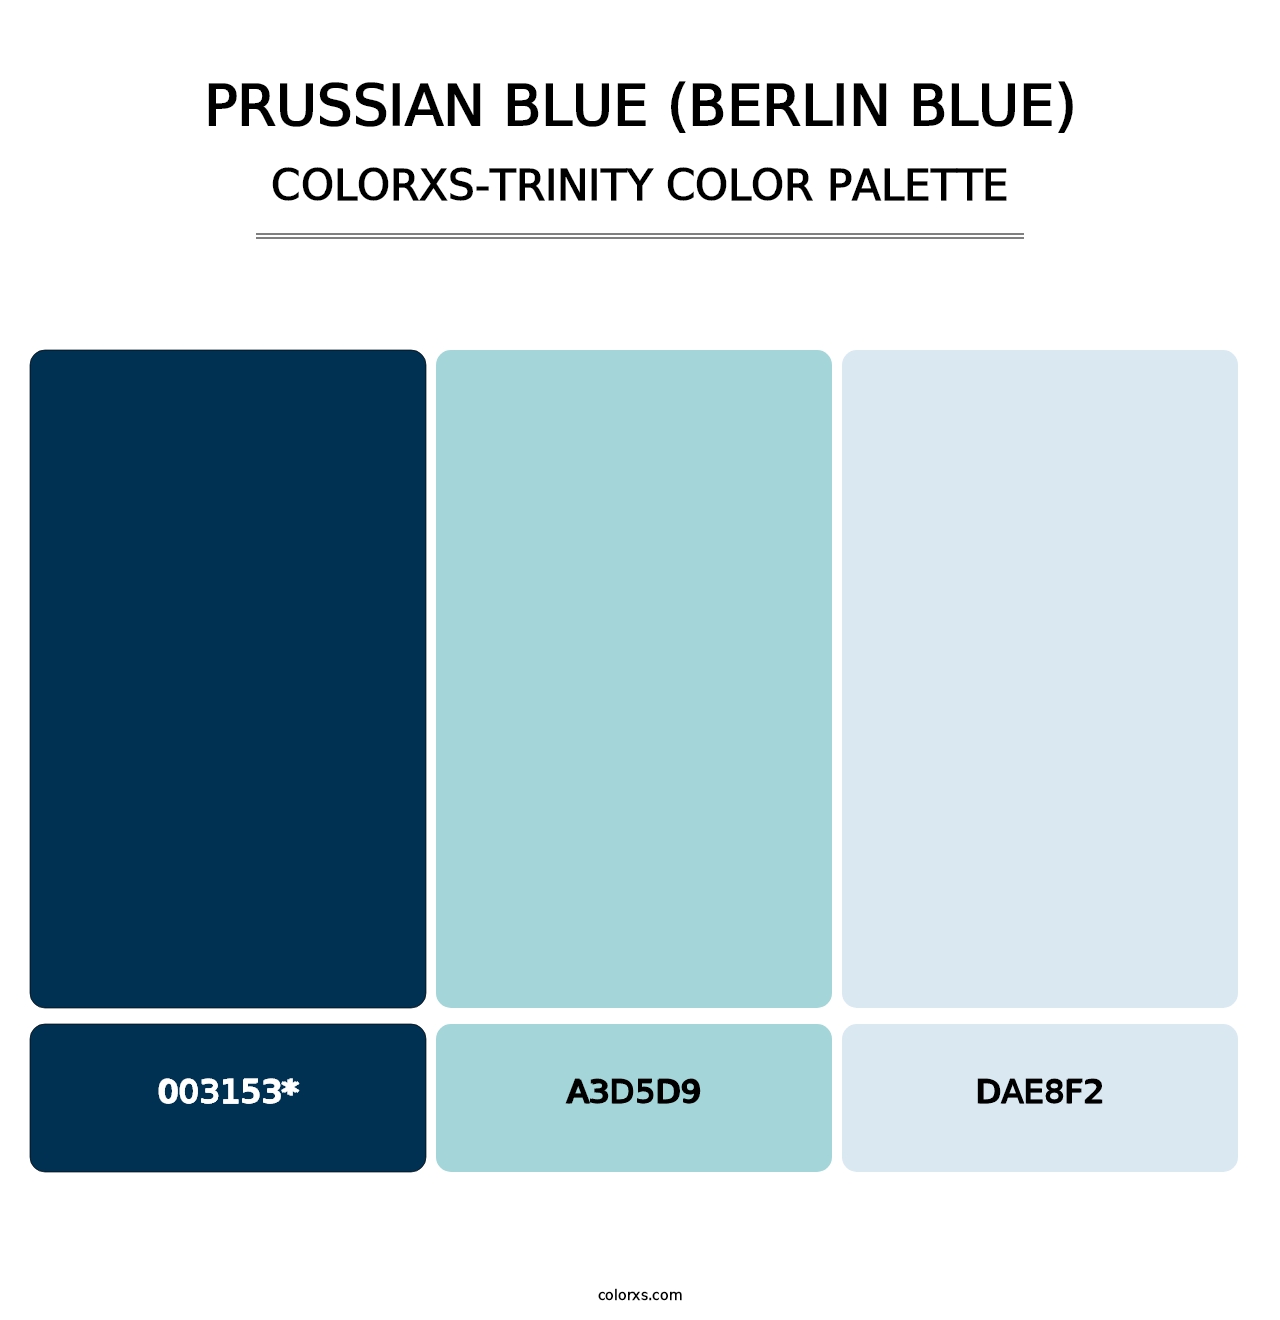 Prussian Blue (Berlin Blue) - Colorxs Trinity Palette